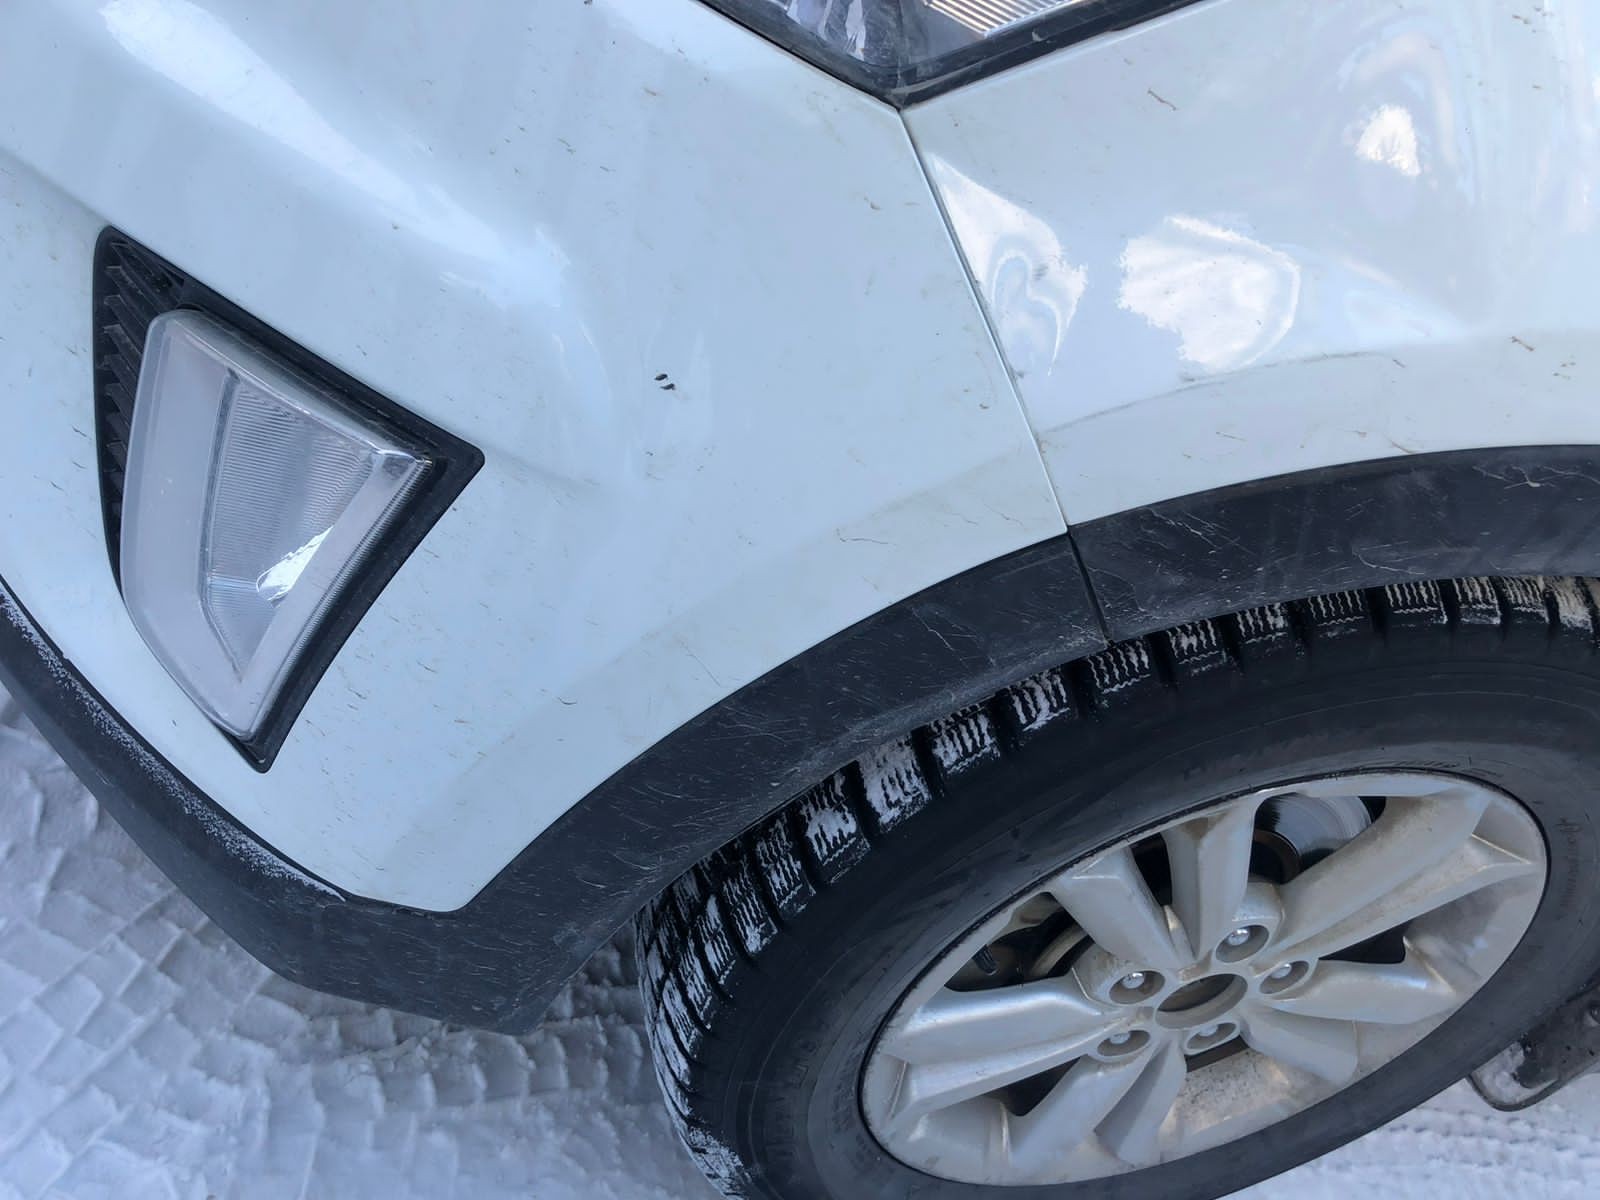 Транспортное средство Hyundai Creta, 2019 г.в., г/н М528МЕ14, цвет - белый, VIN Z94G2811DKR188752. М